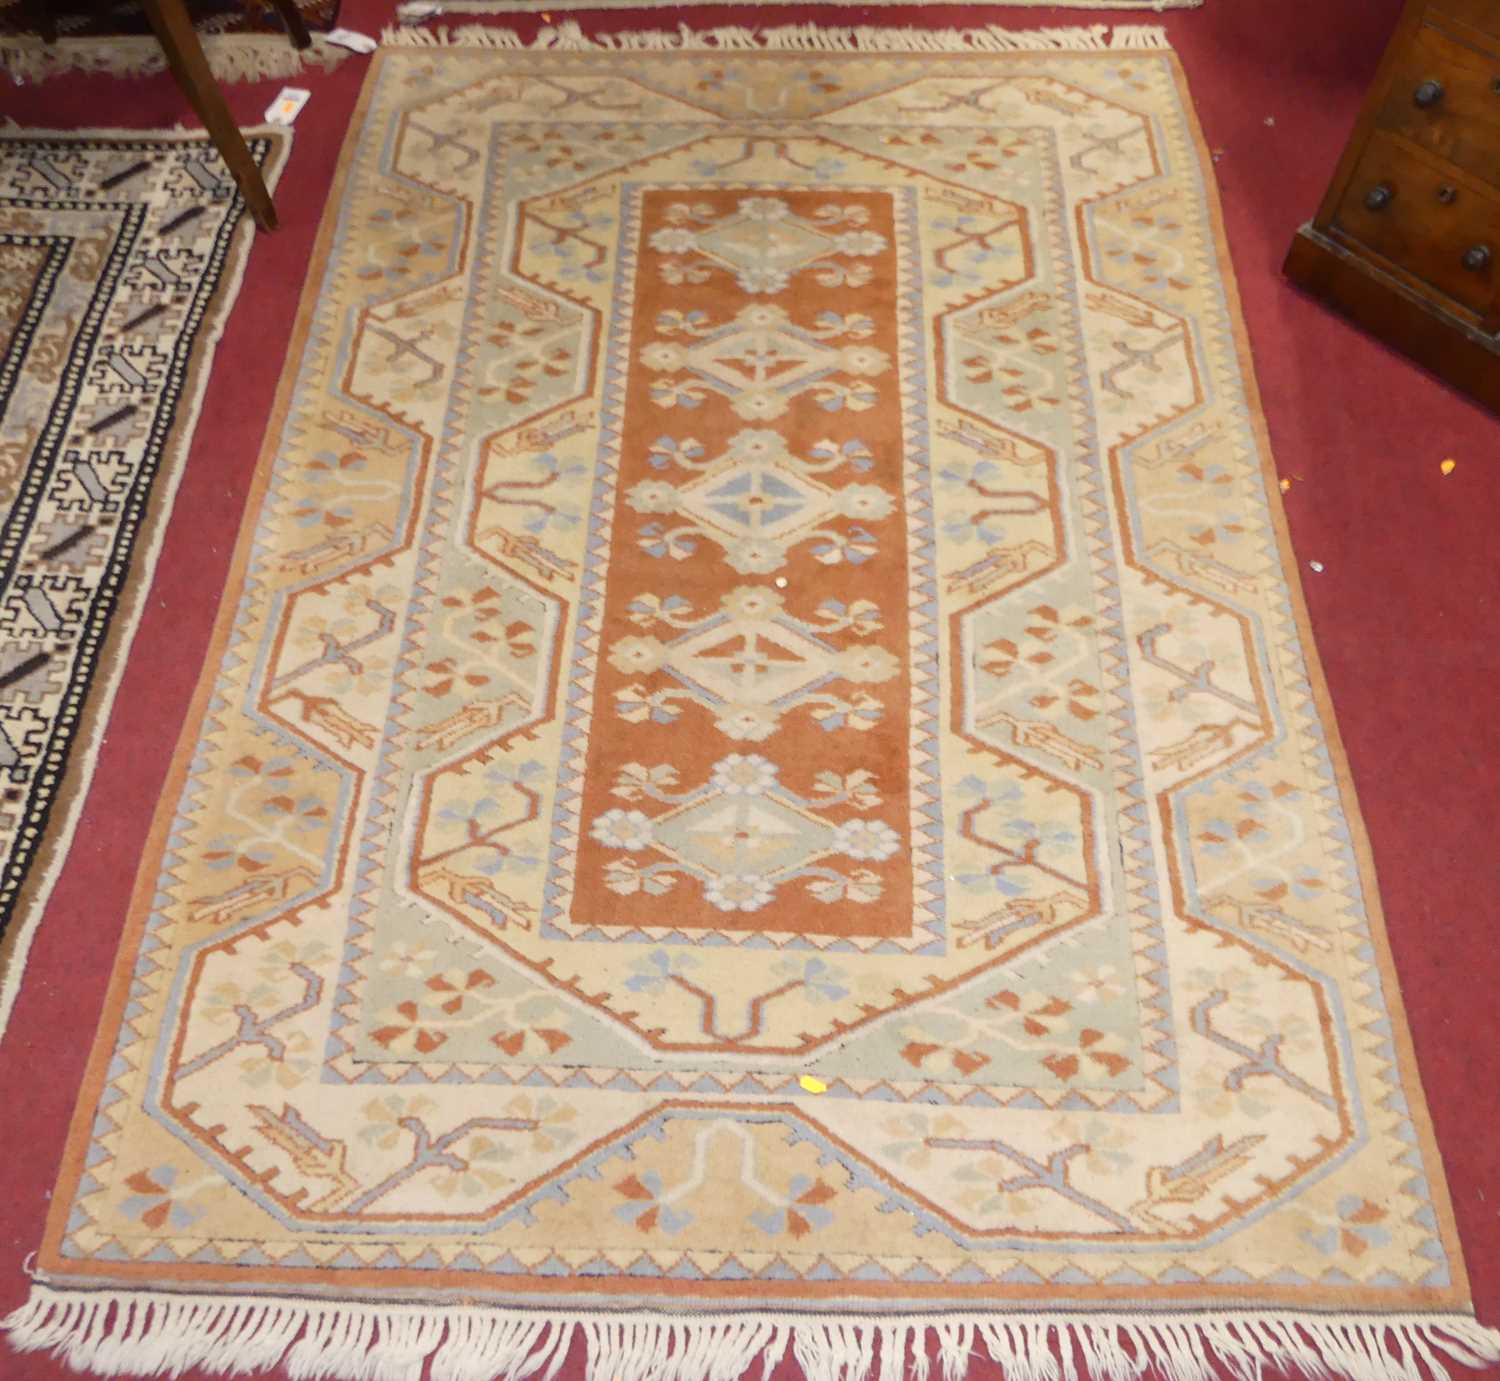 A Turkish woollen cream and orange ground Oushak rug, 180 x 129cm